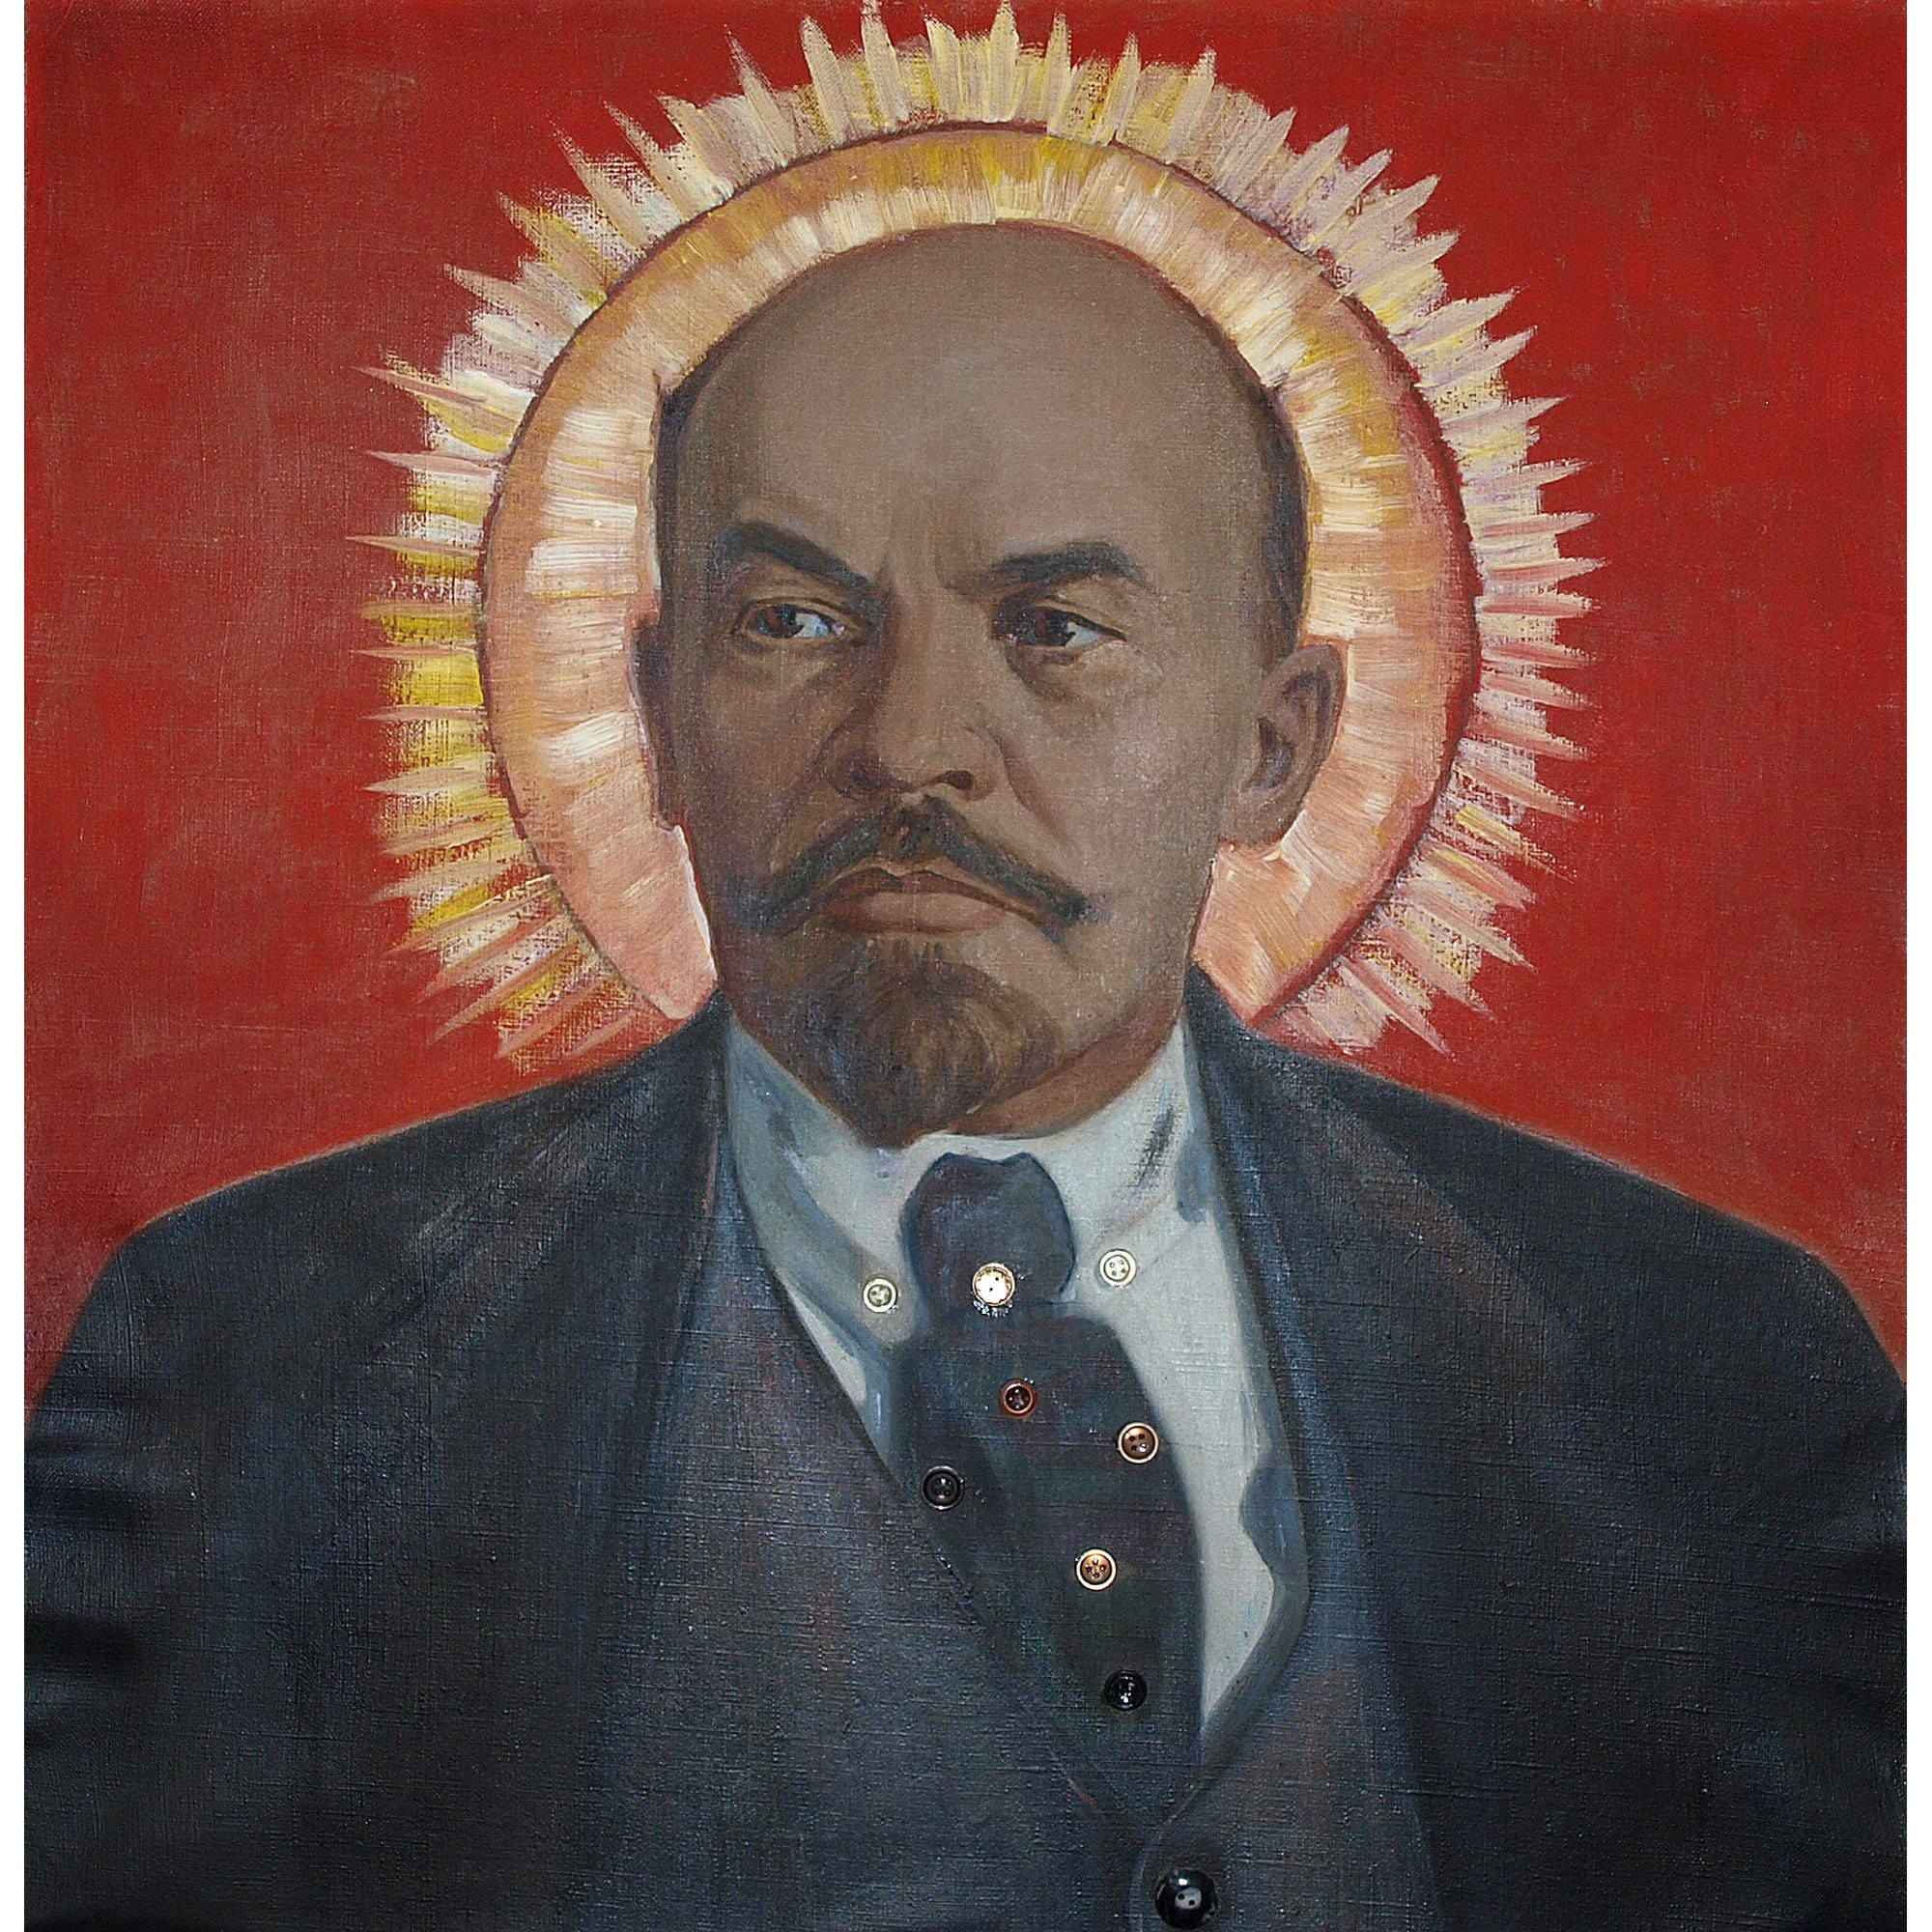 https://art-most.com/wp-content/uploads/2016/03/Terehin_Lenin_i_teper_zhive.jpg